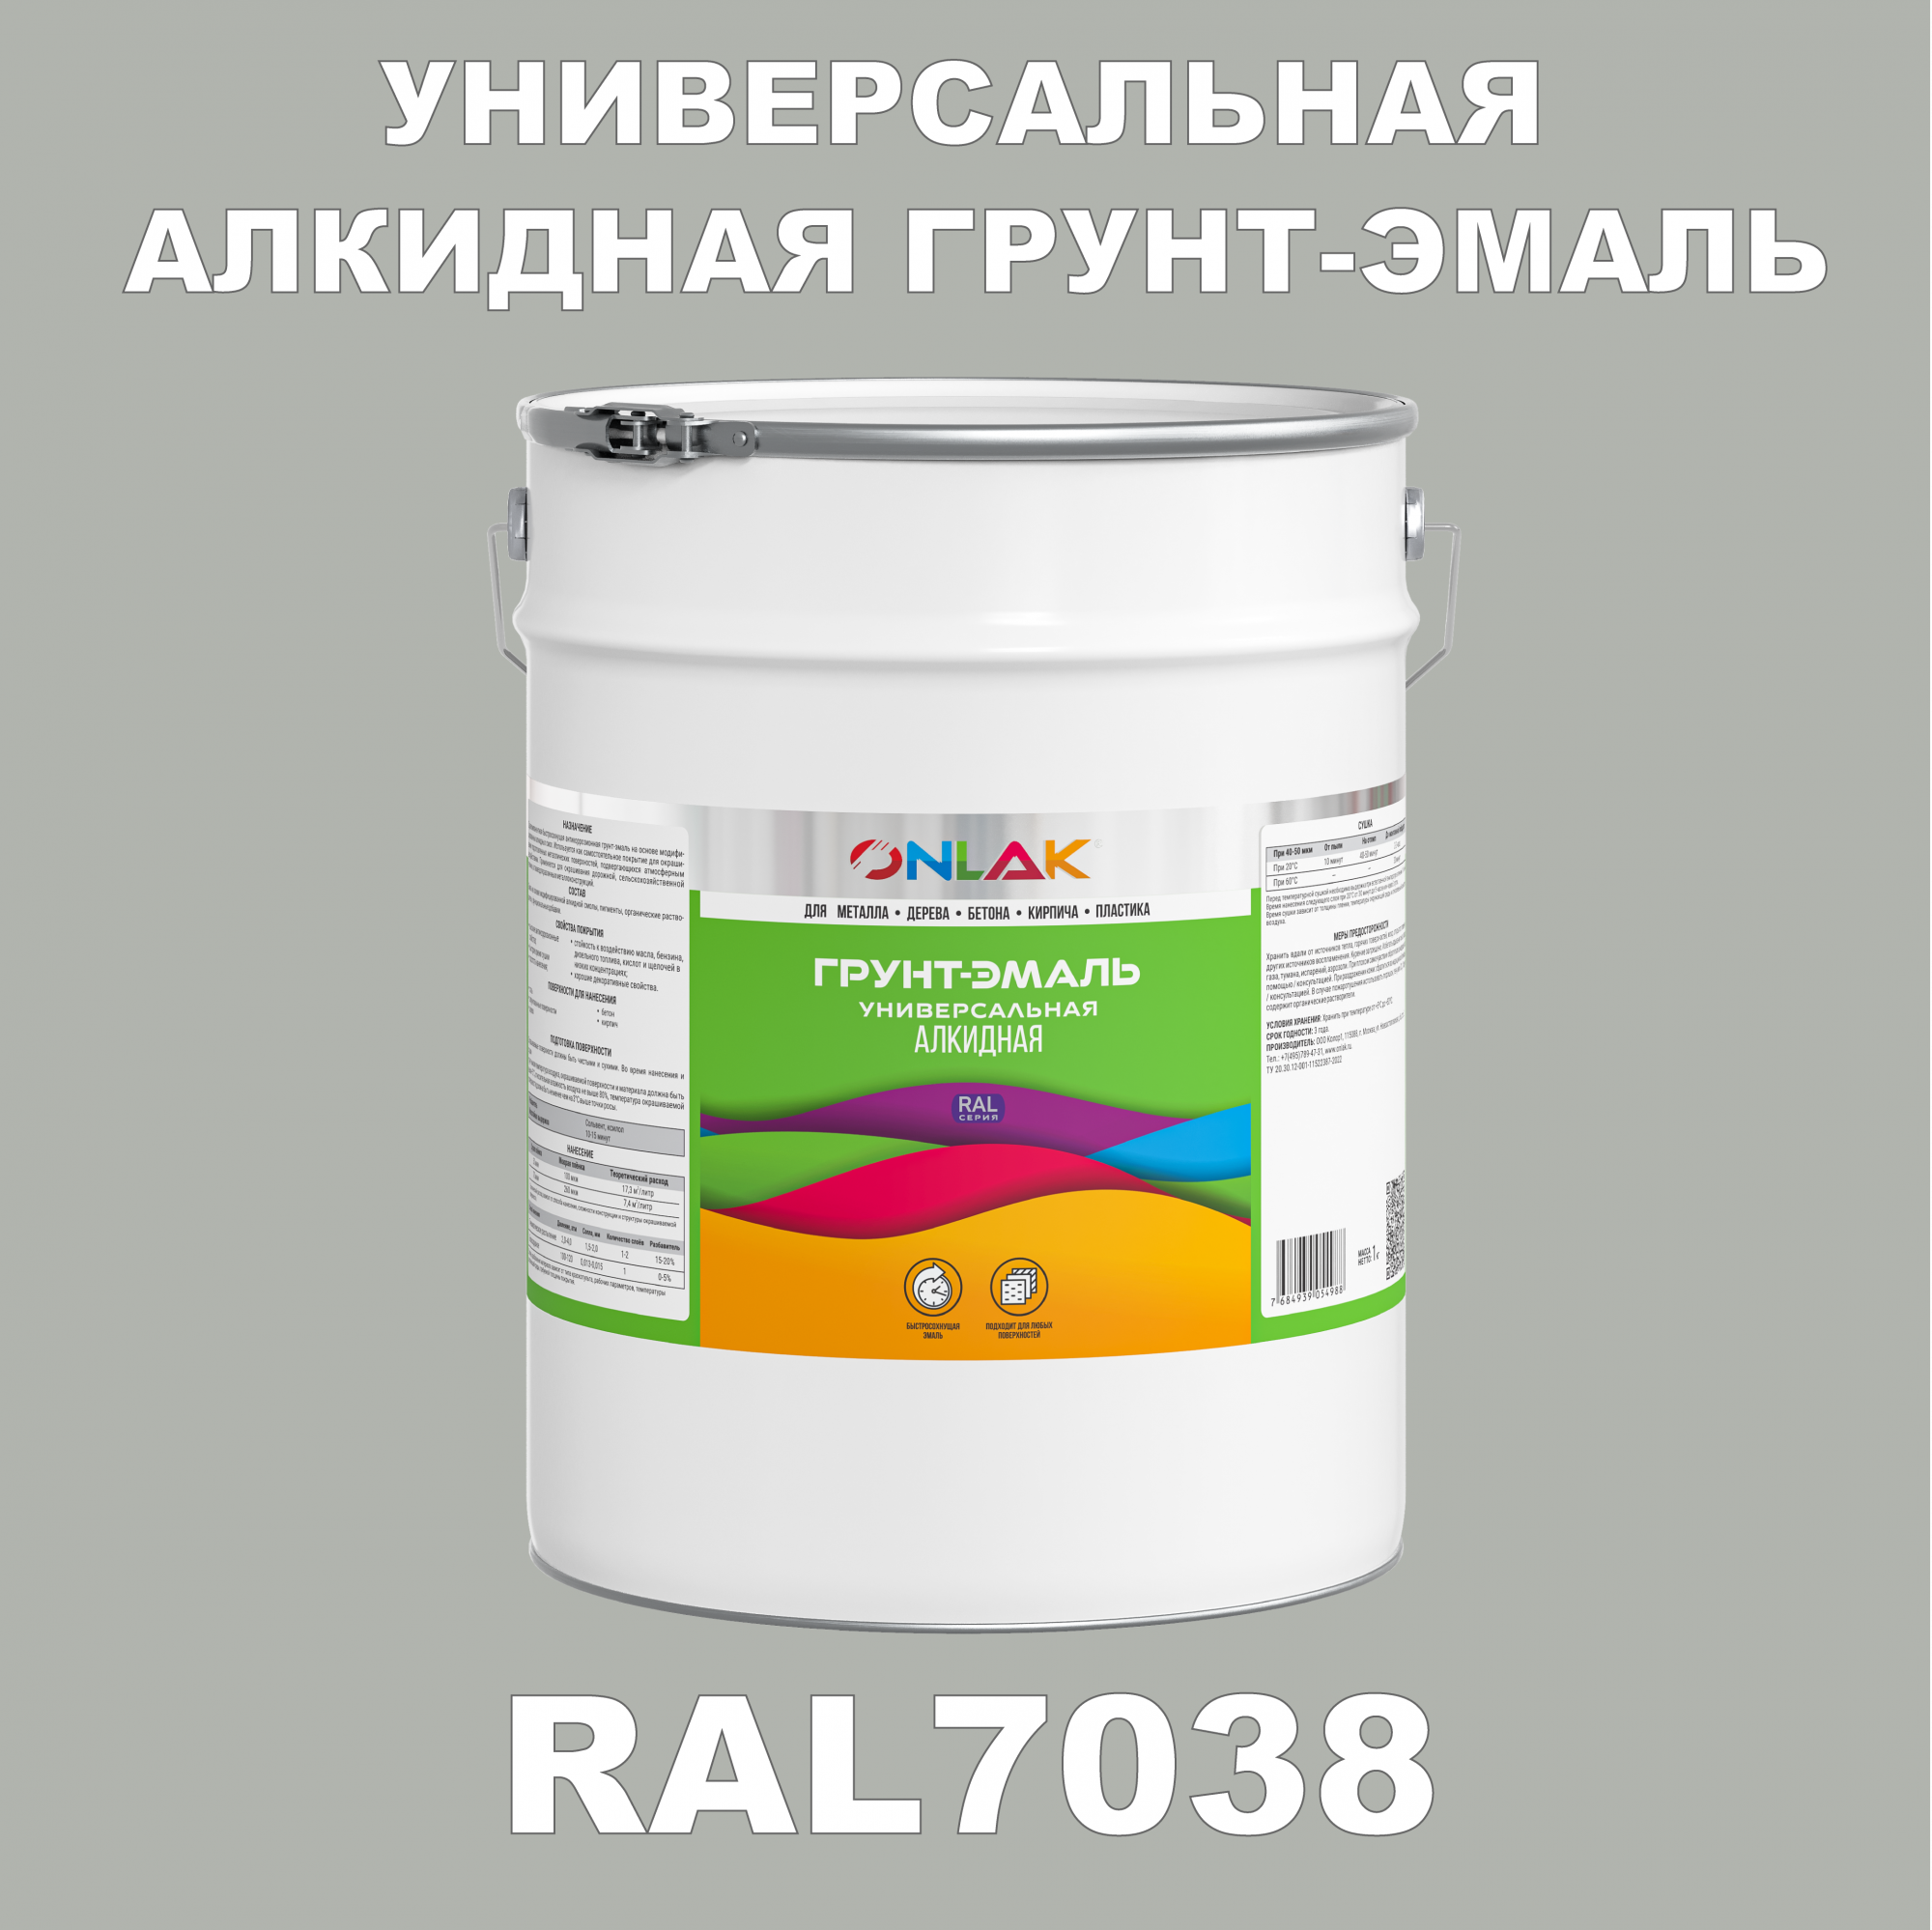 Грунт-эмаль ONLAK 1К RAL7038 антикоррозионная алкидная по металлу по ржавчине 20 кг грунт эмаль neomid по ржавчине быстросохнущая алкидная серая 0 9 кг